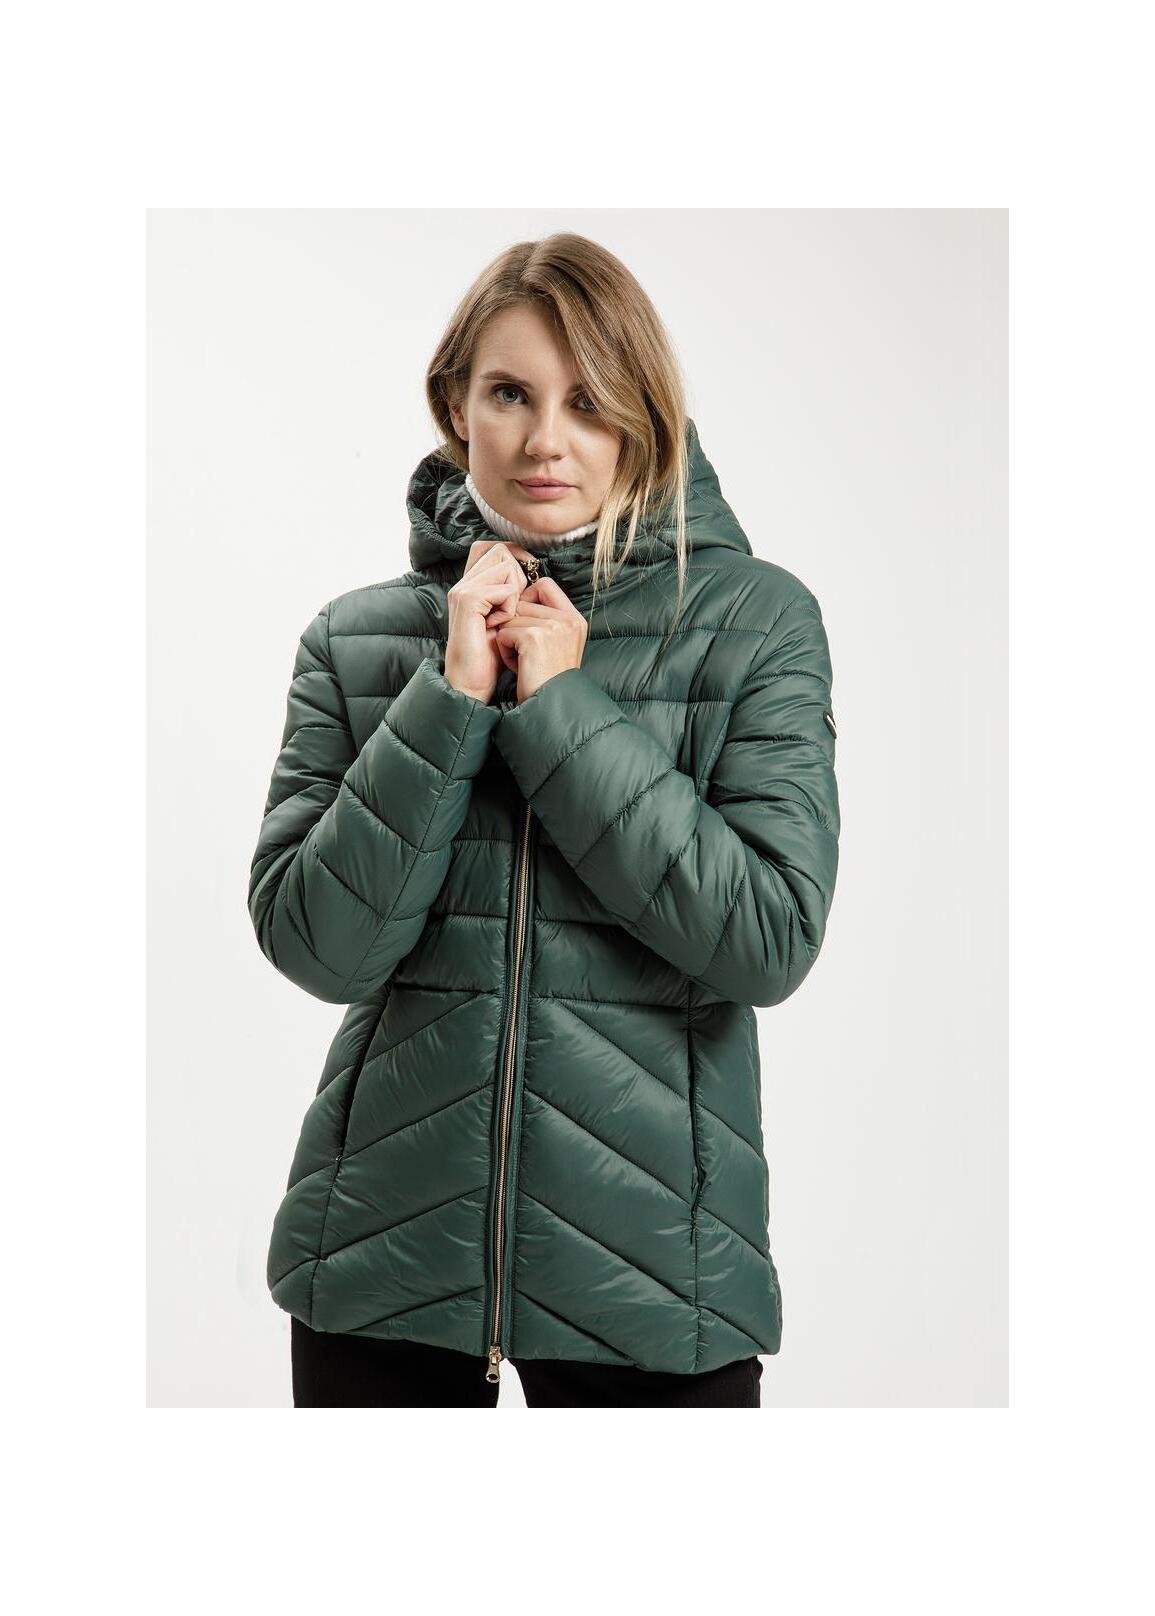 Cross Jeans® Winter Puffer Hoodie Jacket - Green (027)